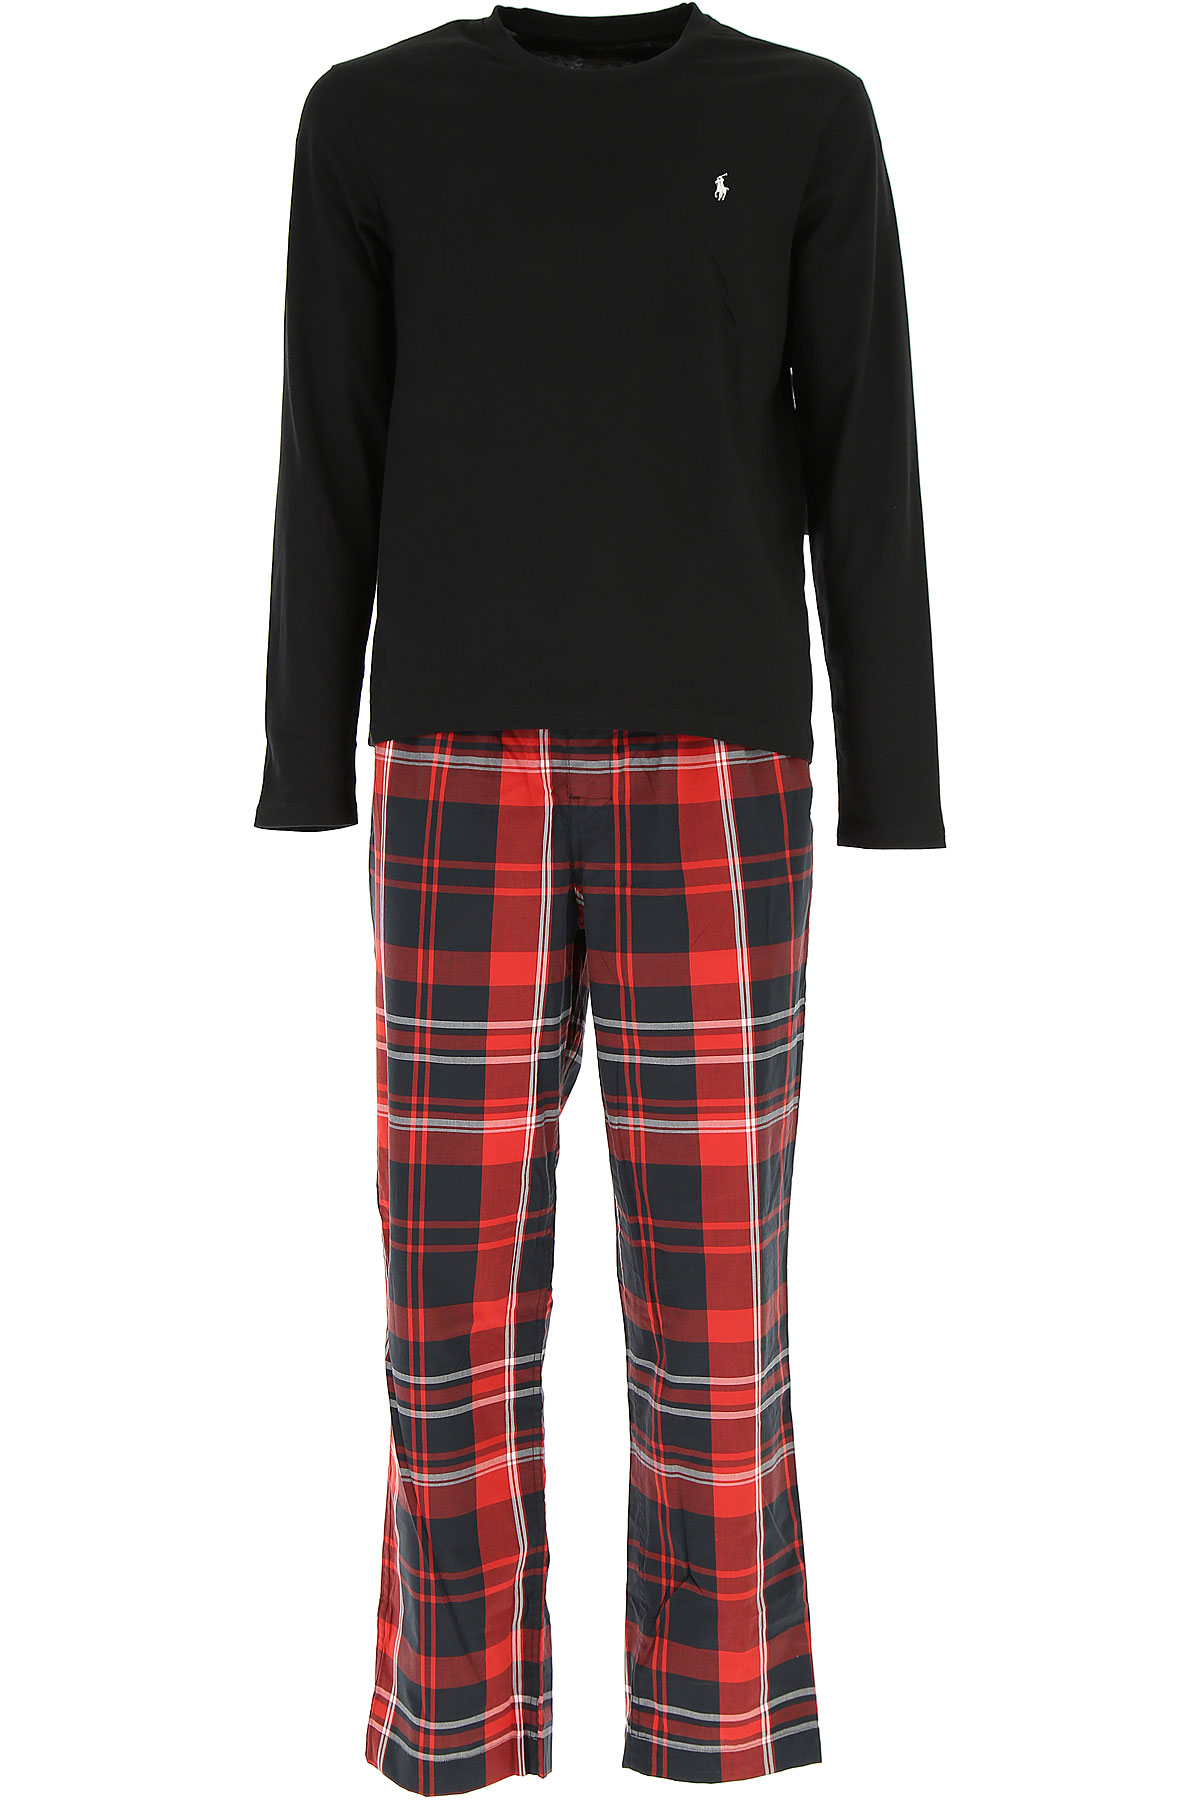 Ralph Lauren Pyjama Homme , Noir, Coton, 2017, L M S XL